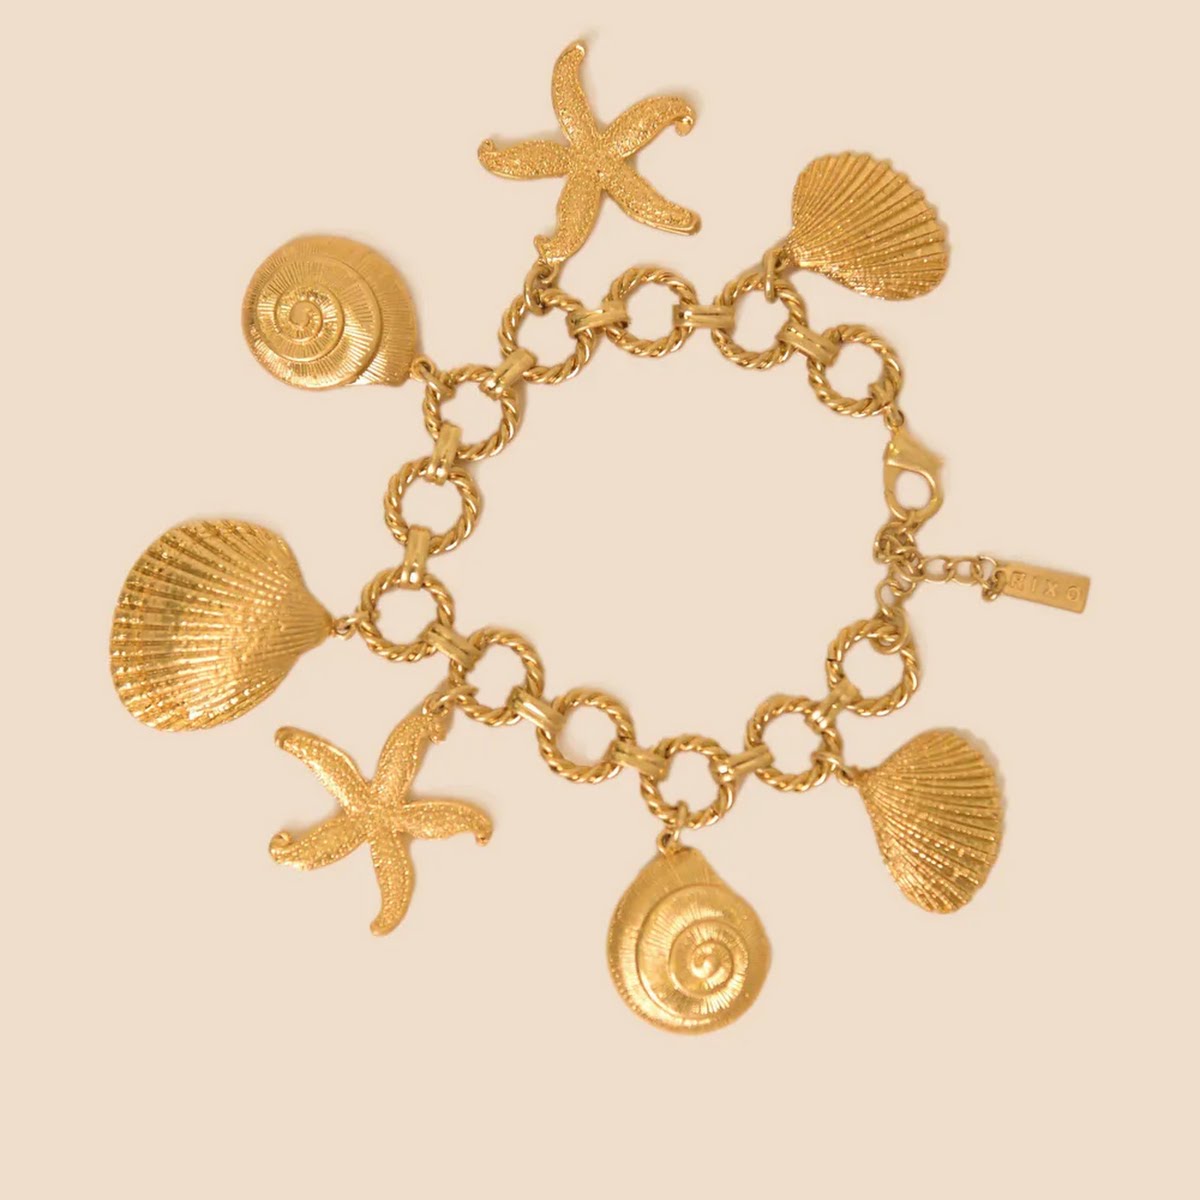 Rixo Sunny Sea Charm Bracelet, €160